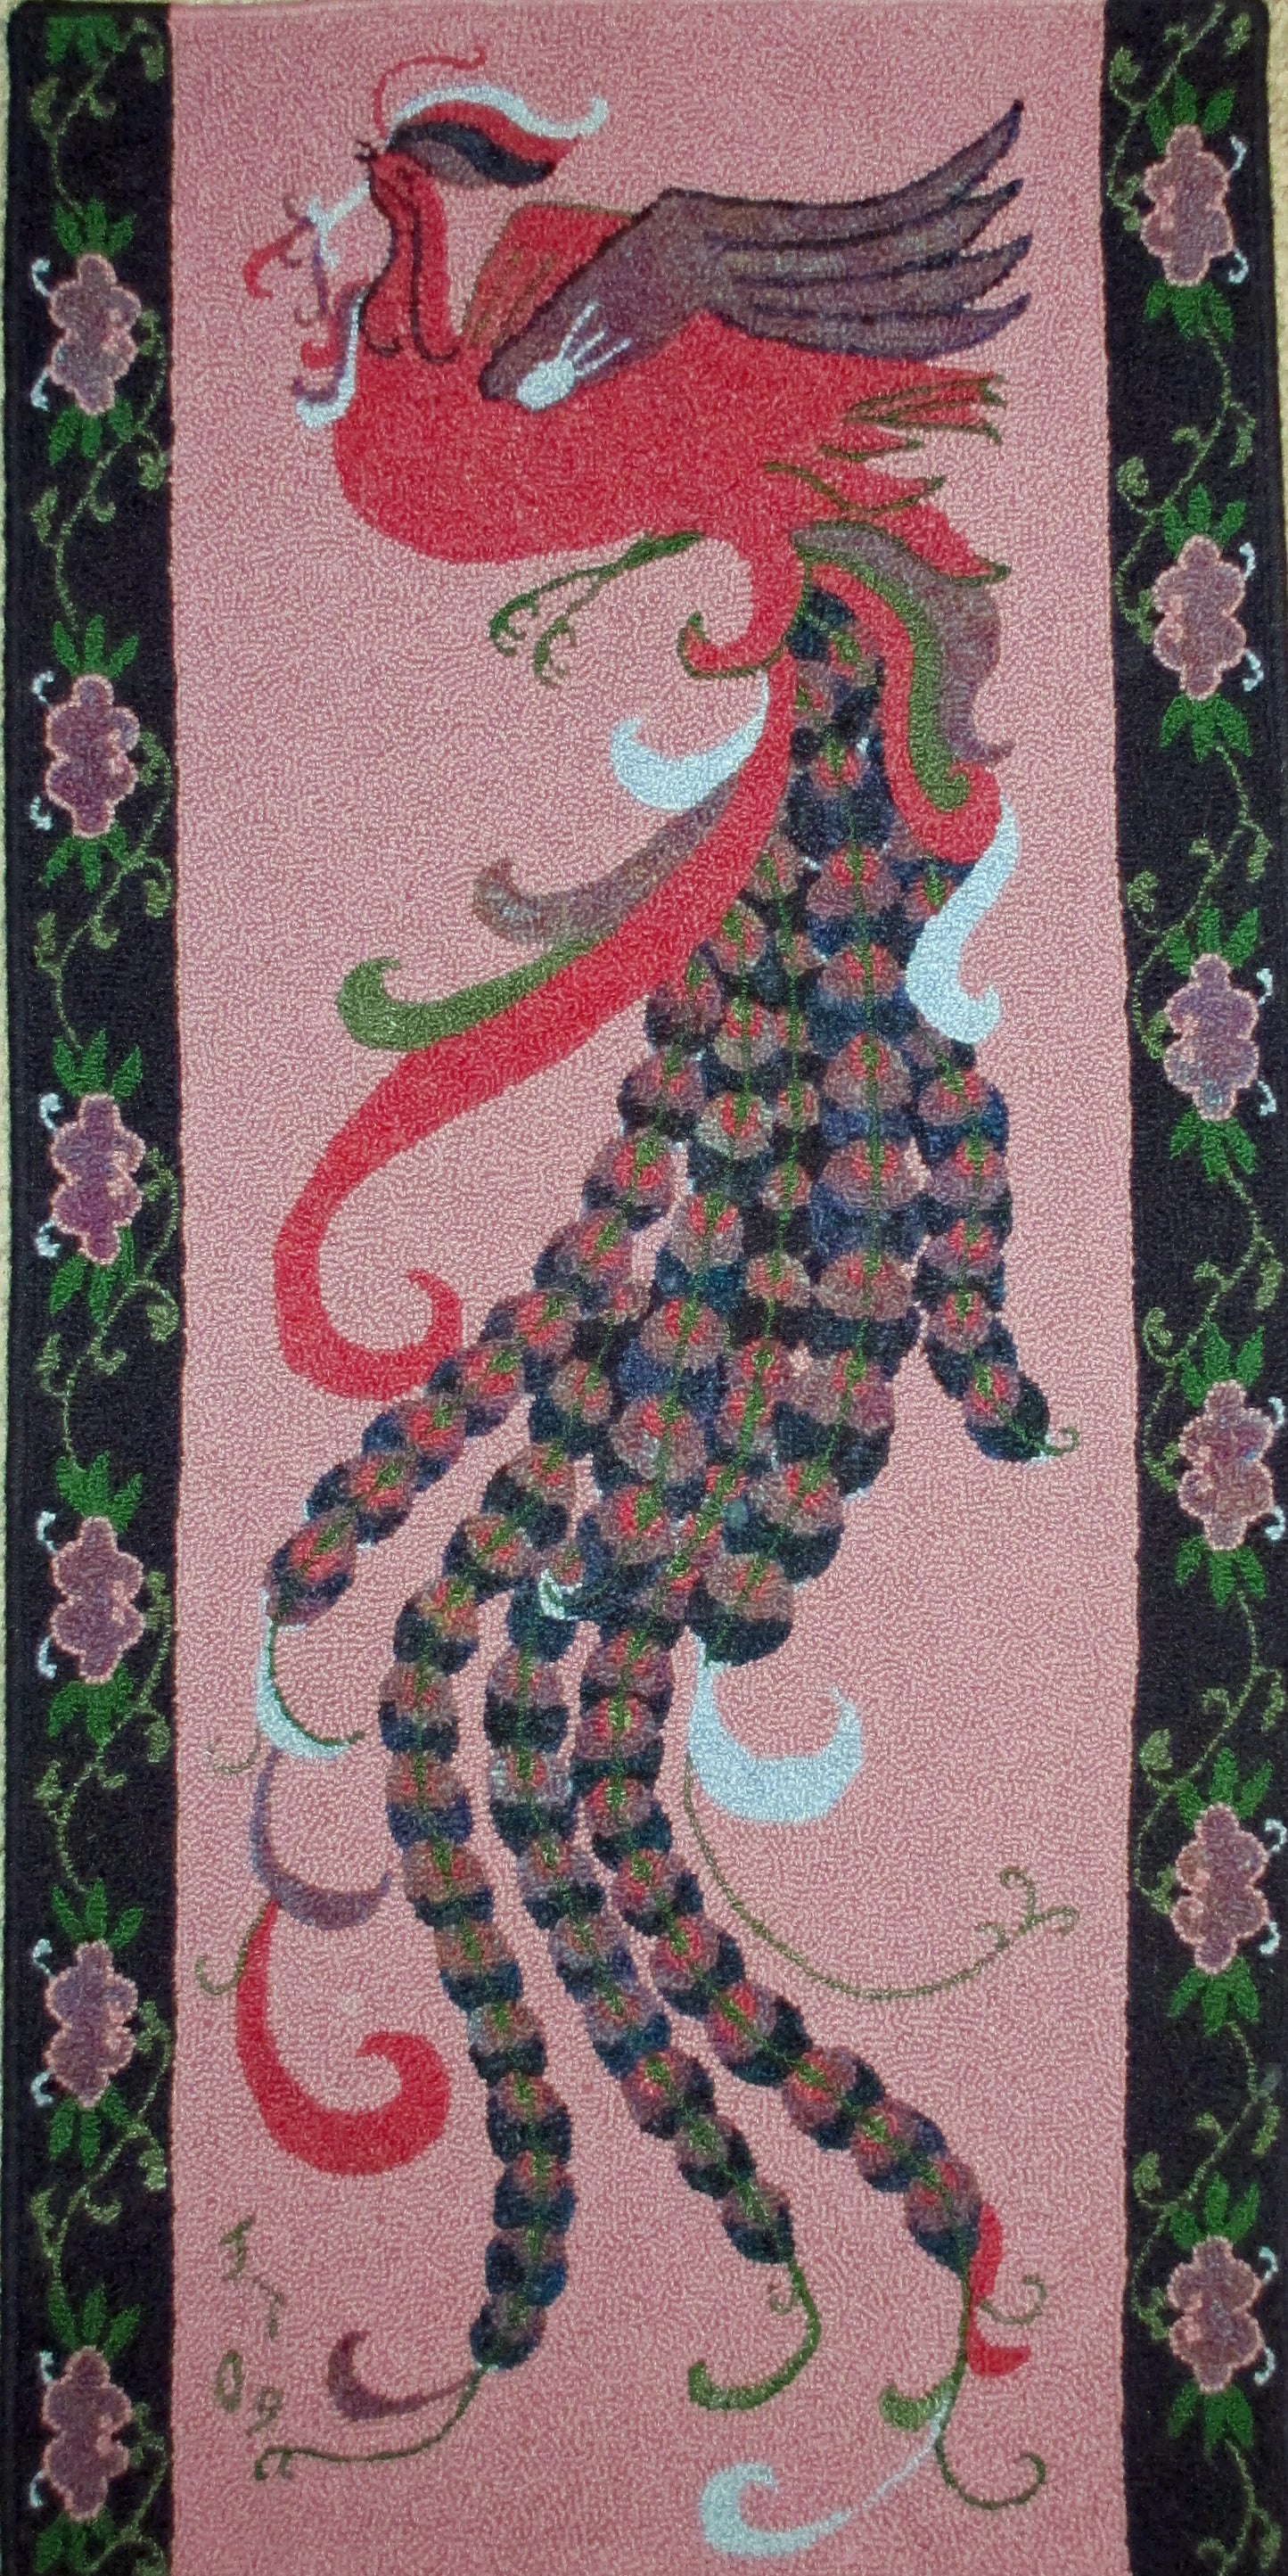 Bird of Paradise Pattern on linen, 55.5"x27.5"